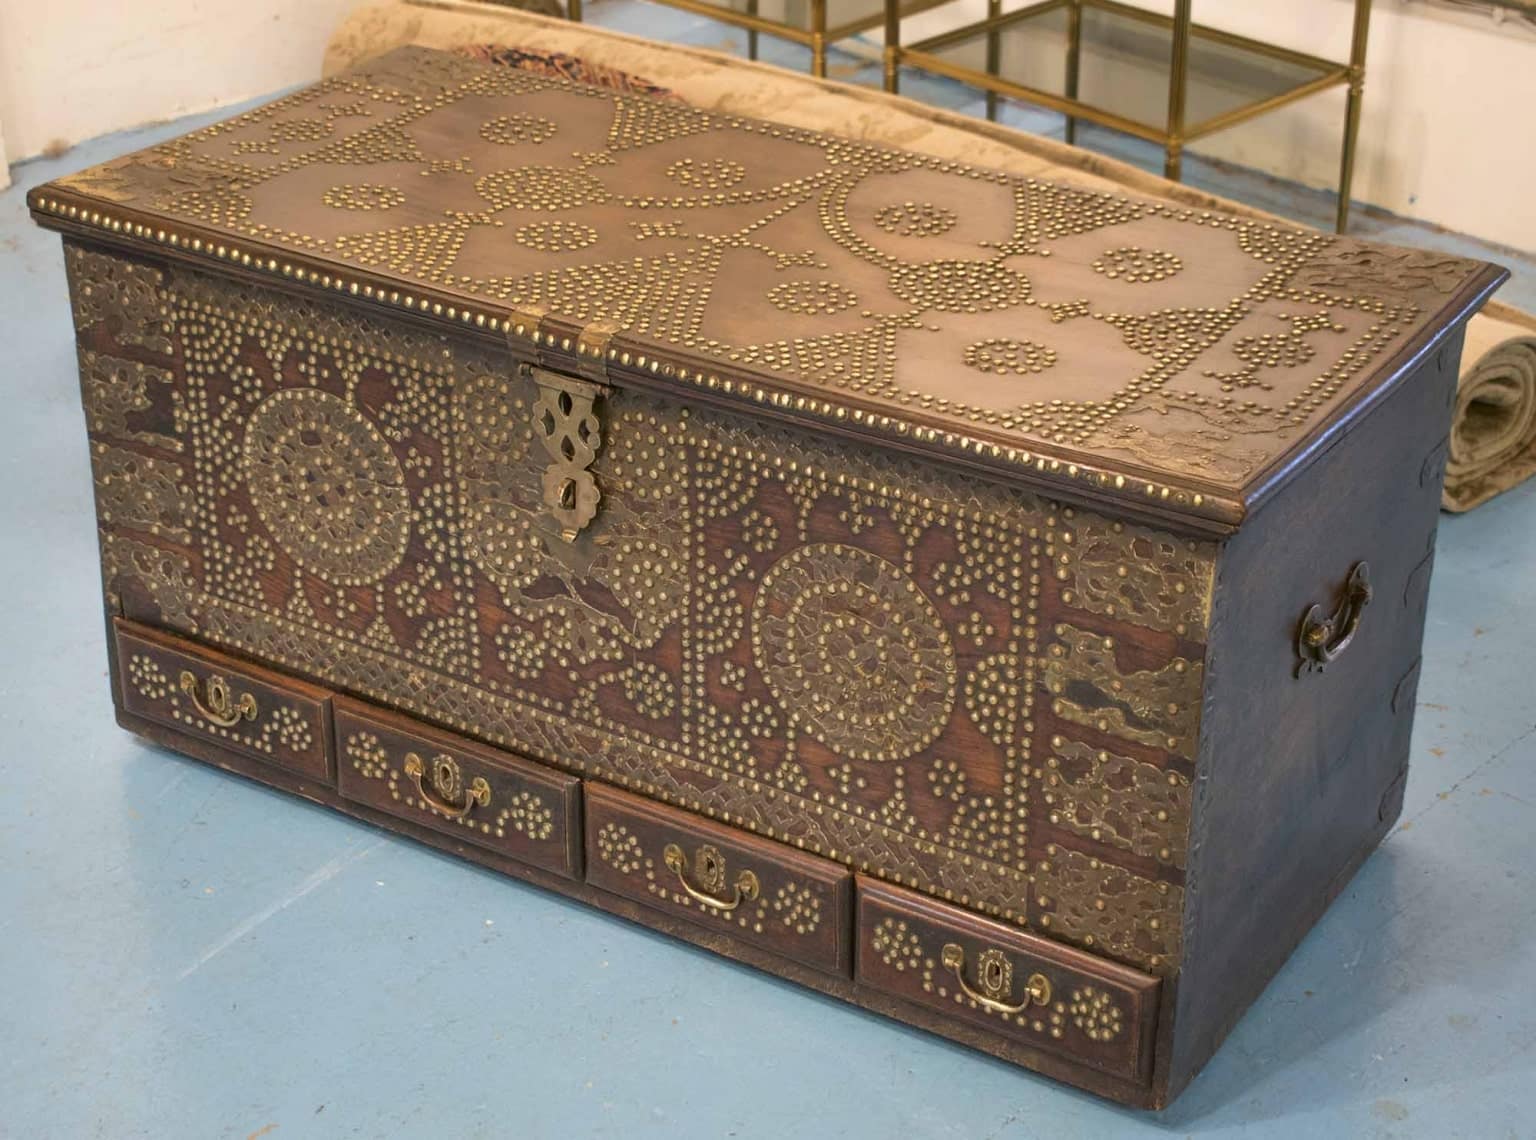 مندو یا صندوقچه عمانی